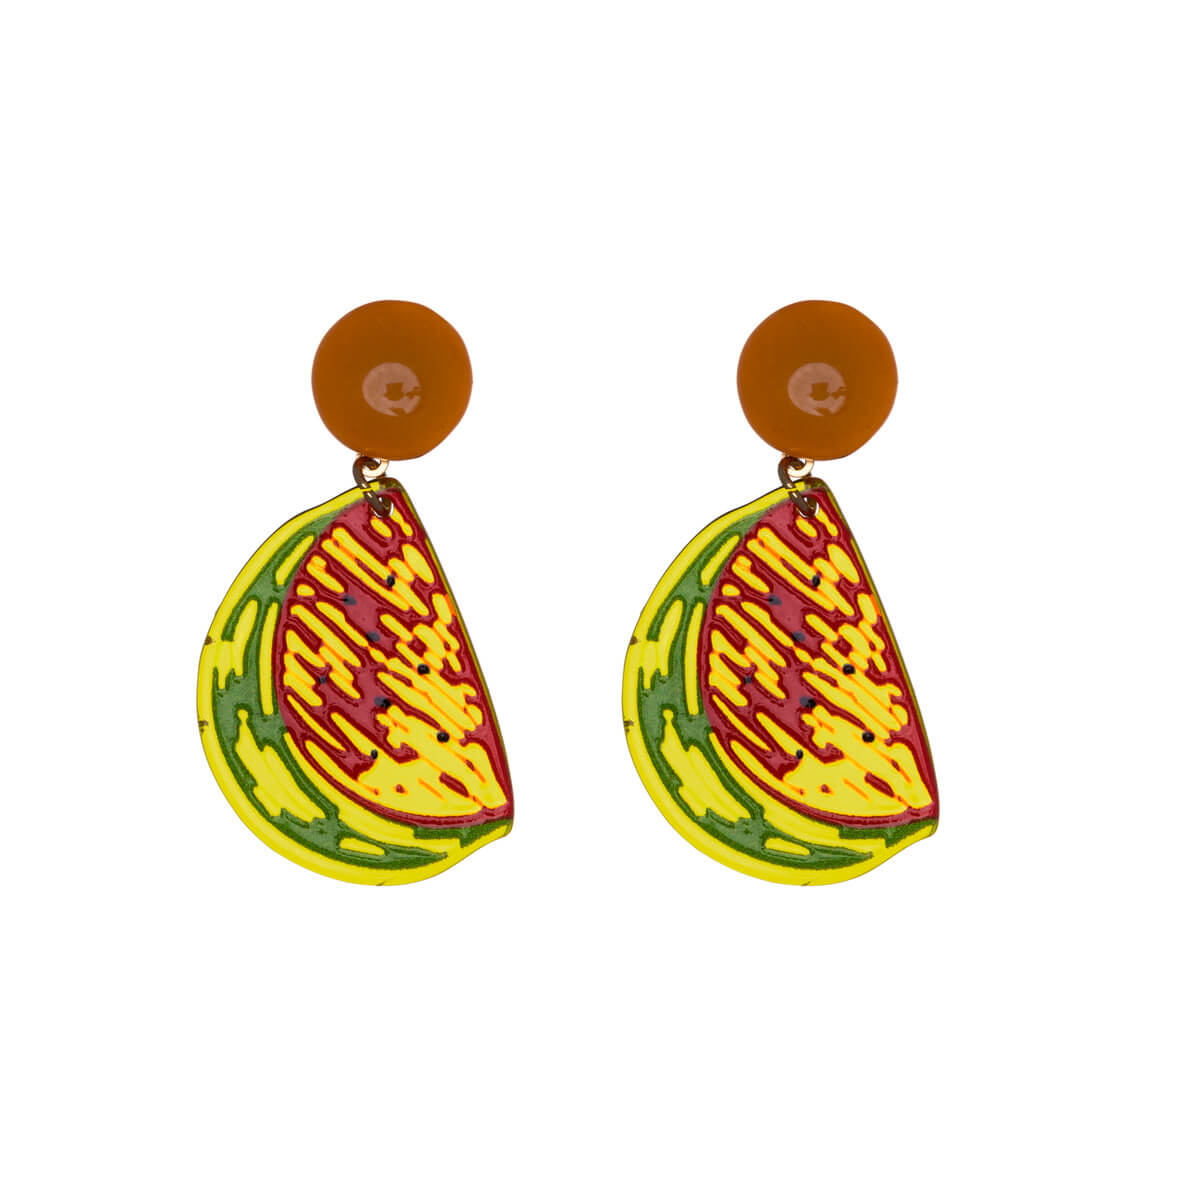 Plastic watermelon earrings